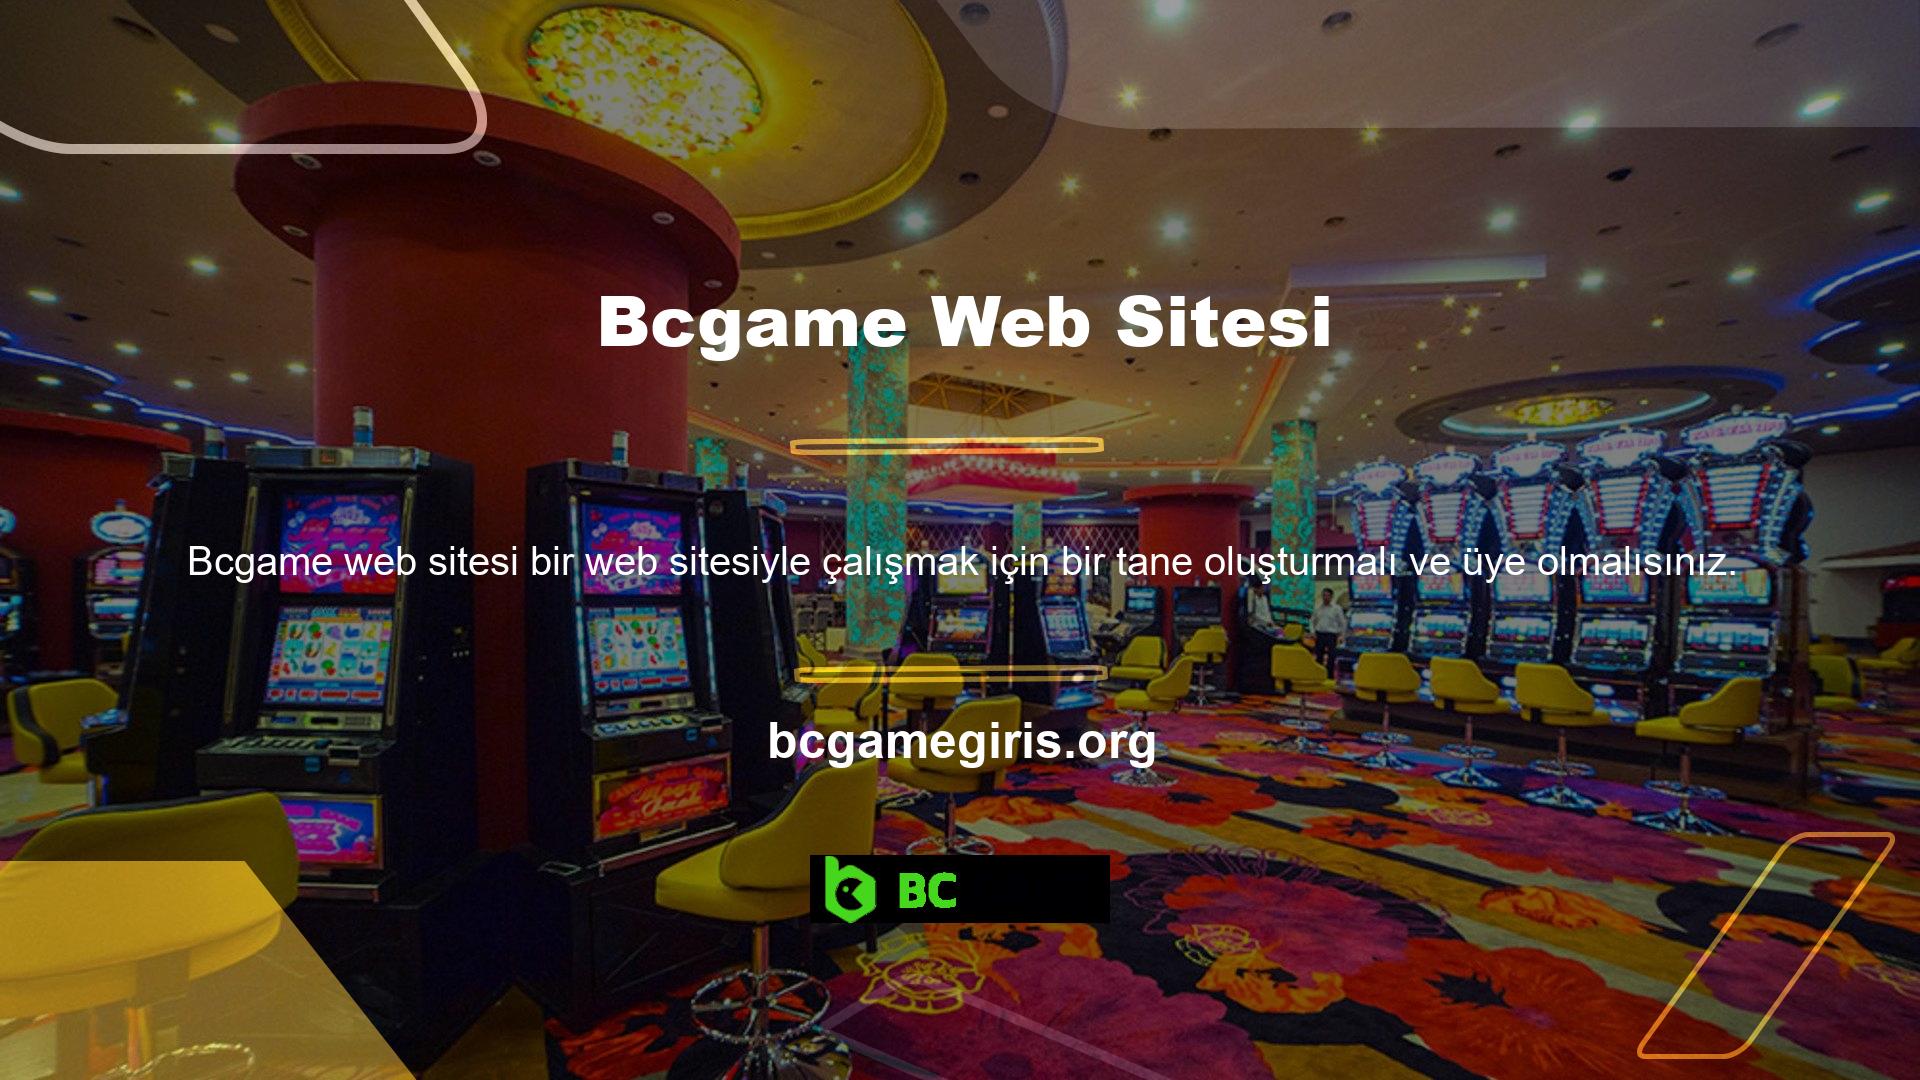 Kayıt işlemini tamamlamadığınız sürece Bcgame web sitesinin içeriğini kullanamazsınız